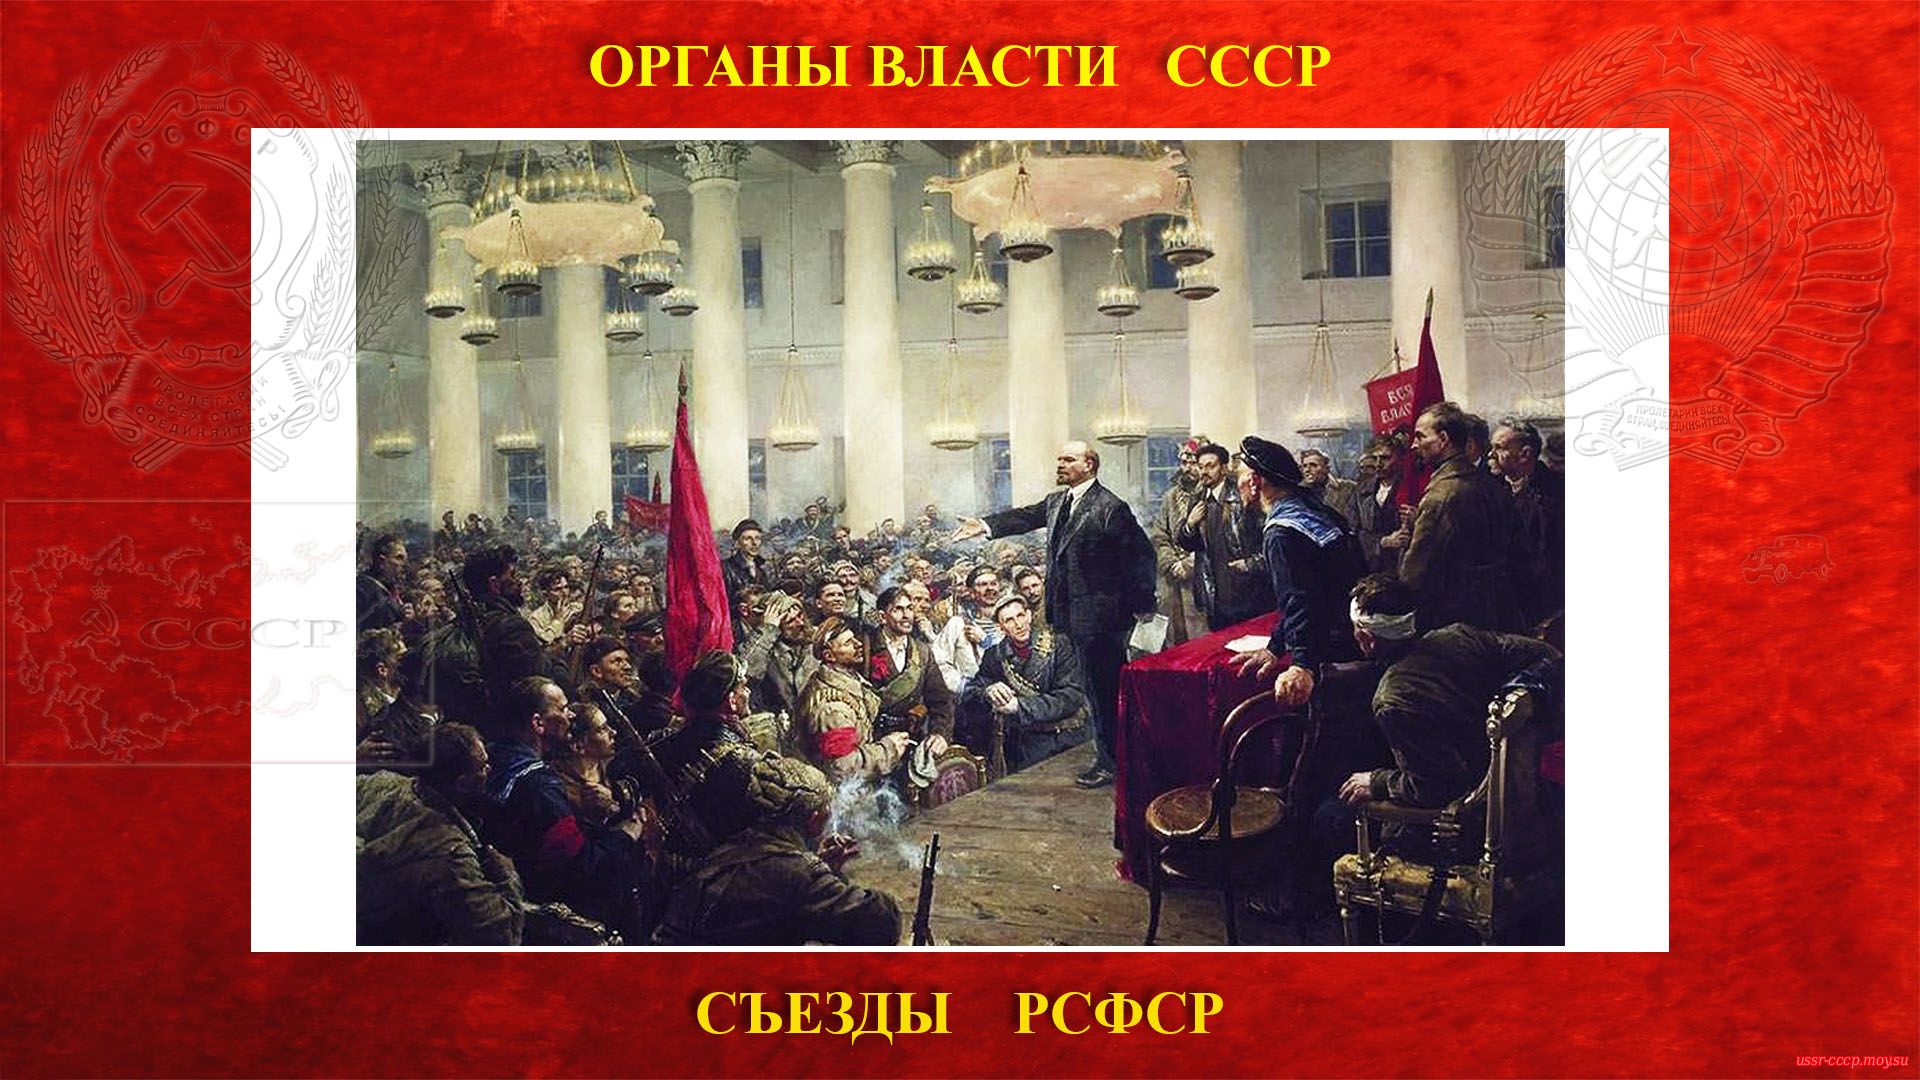 II Всероссийский съезд Советов рабочих и солдатских депутатов (07.11.1917 — 09.11.1917) (повествование)